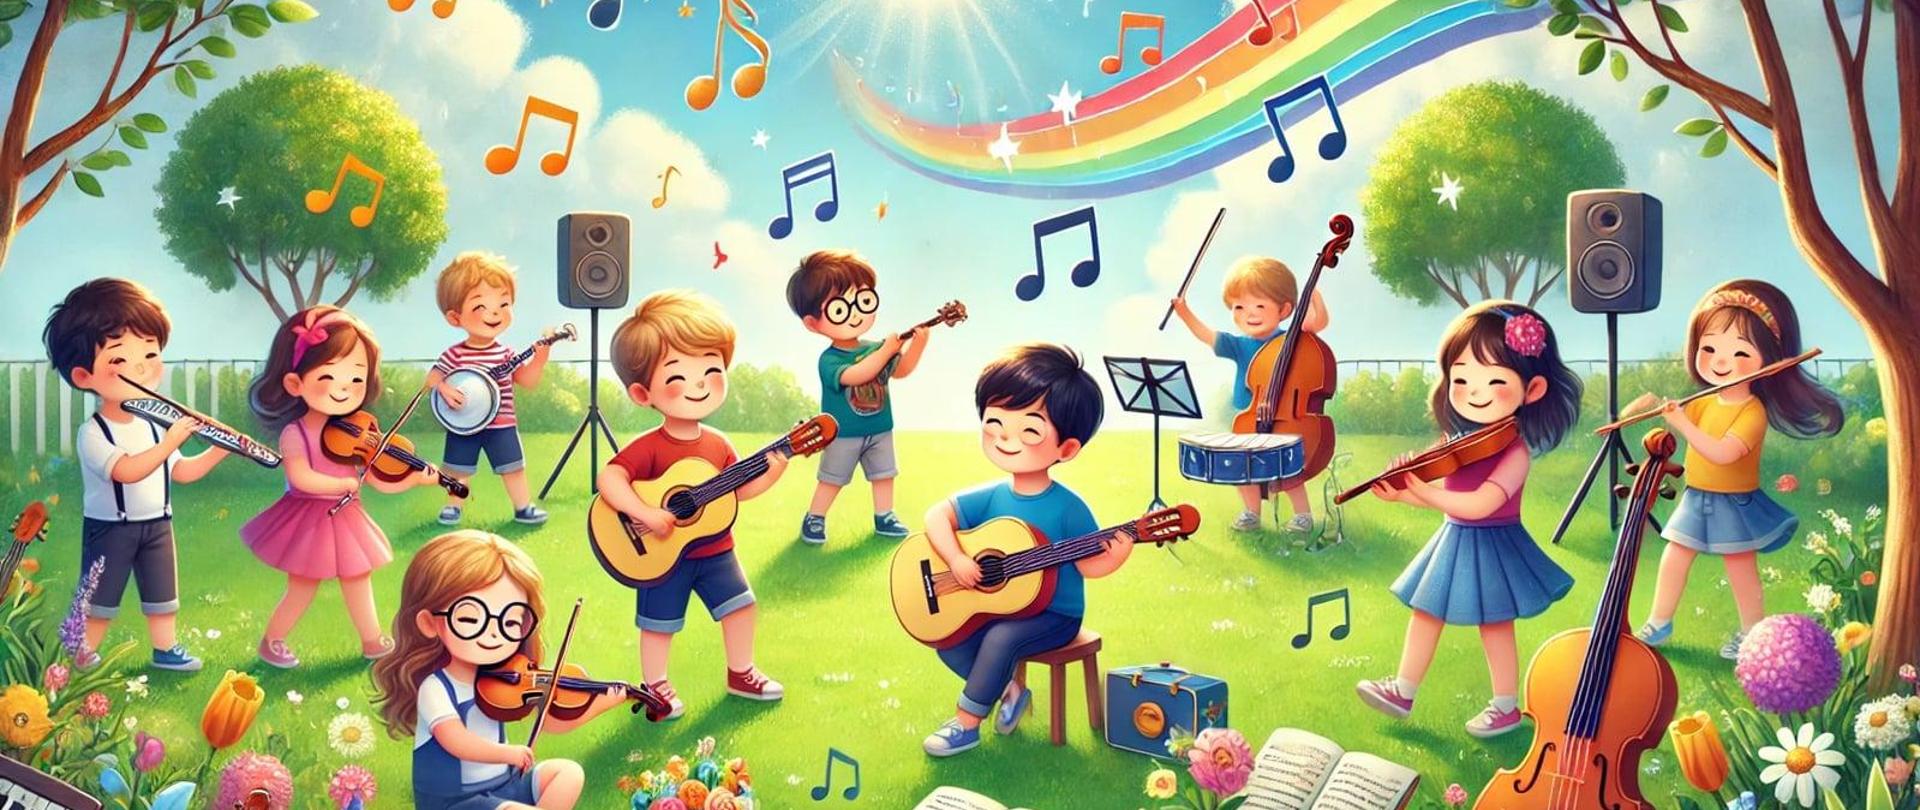 Żywy i kolorowy obraz o tematyce letniej dla strony internetowej podstawowej szkoły muzycznej. Scena obejmuje dzieci grające na różnych instrumentach muzycznych